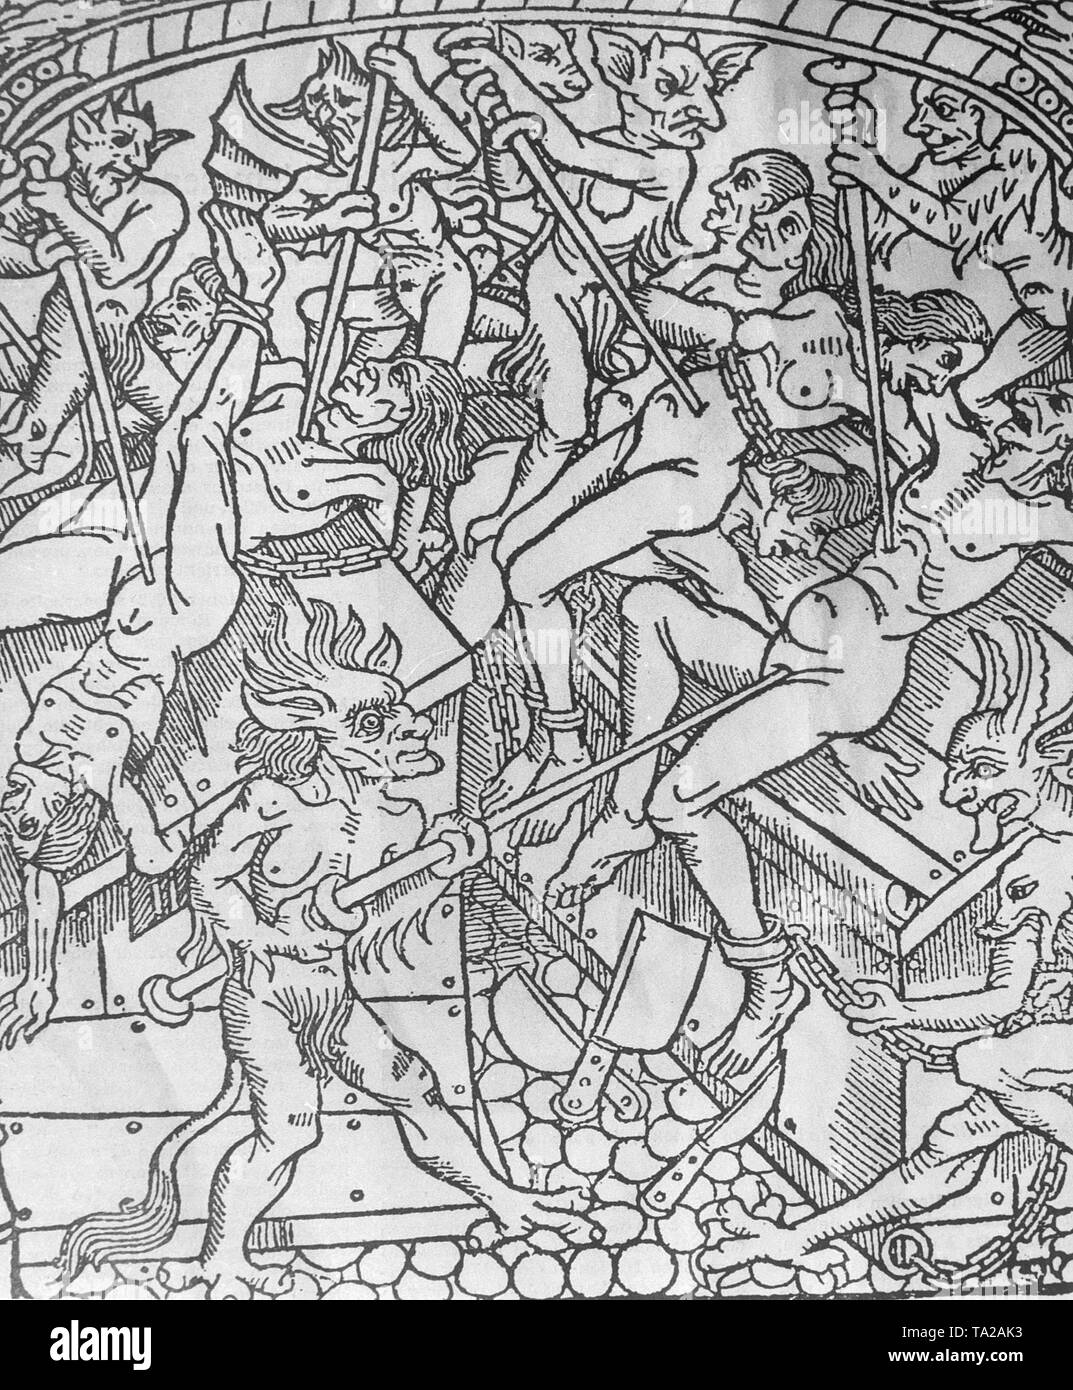 Diablo en el infierno. Una xilografía del siglo XVI. Foto de stock